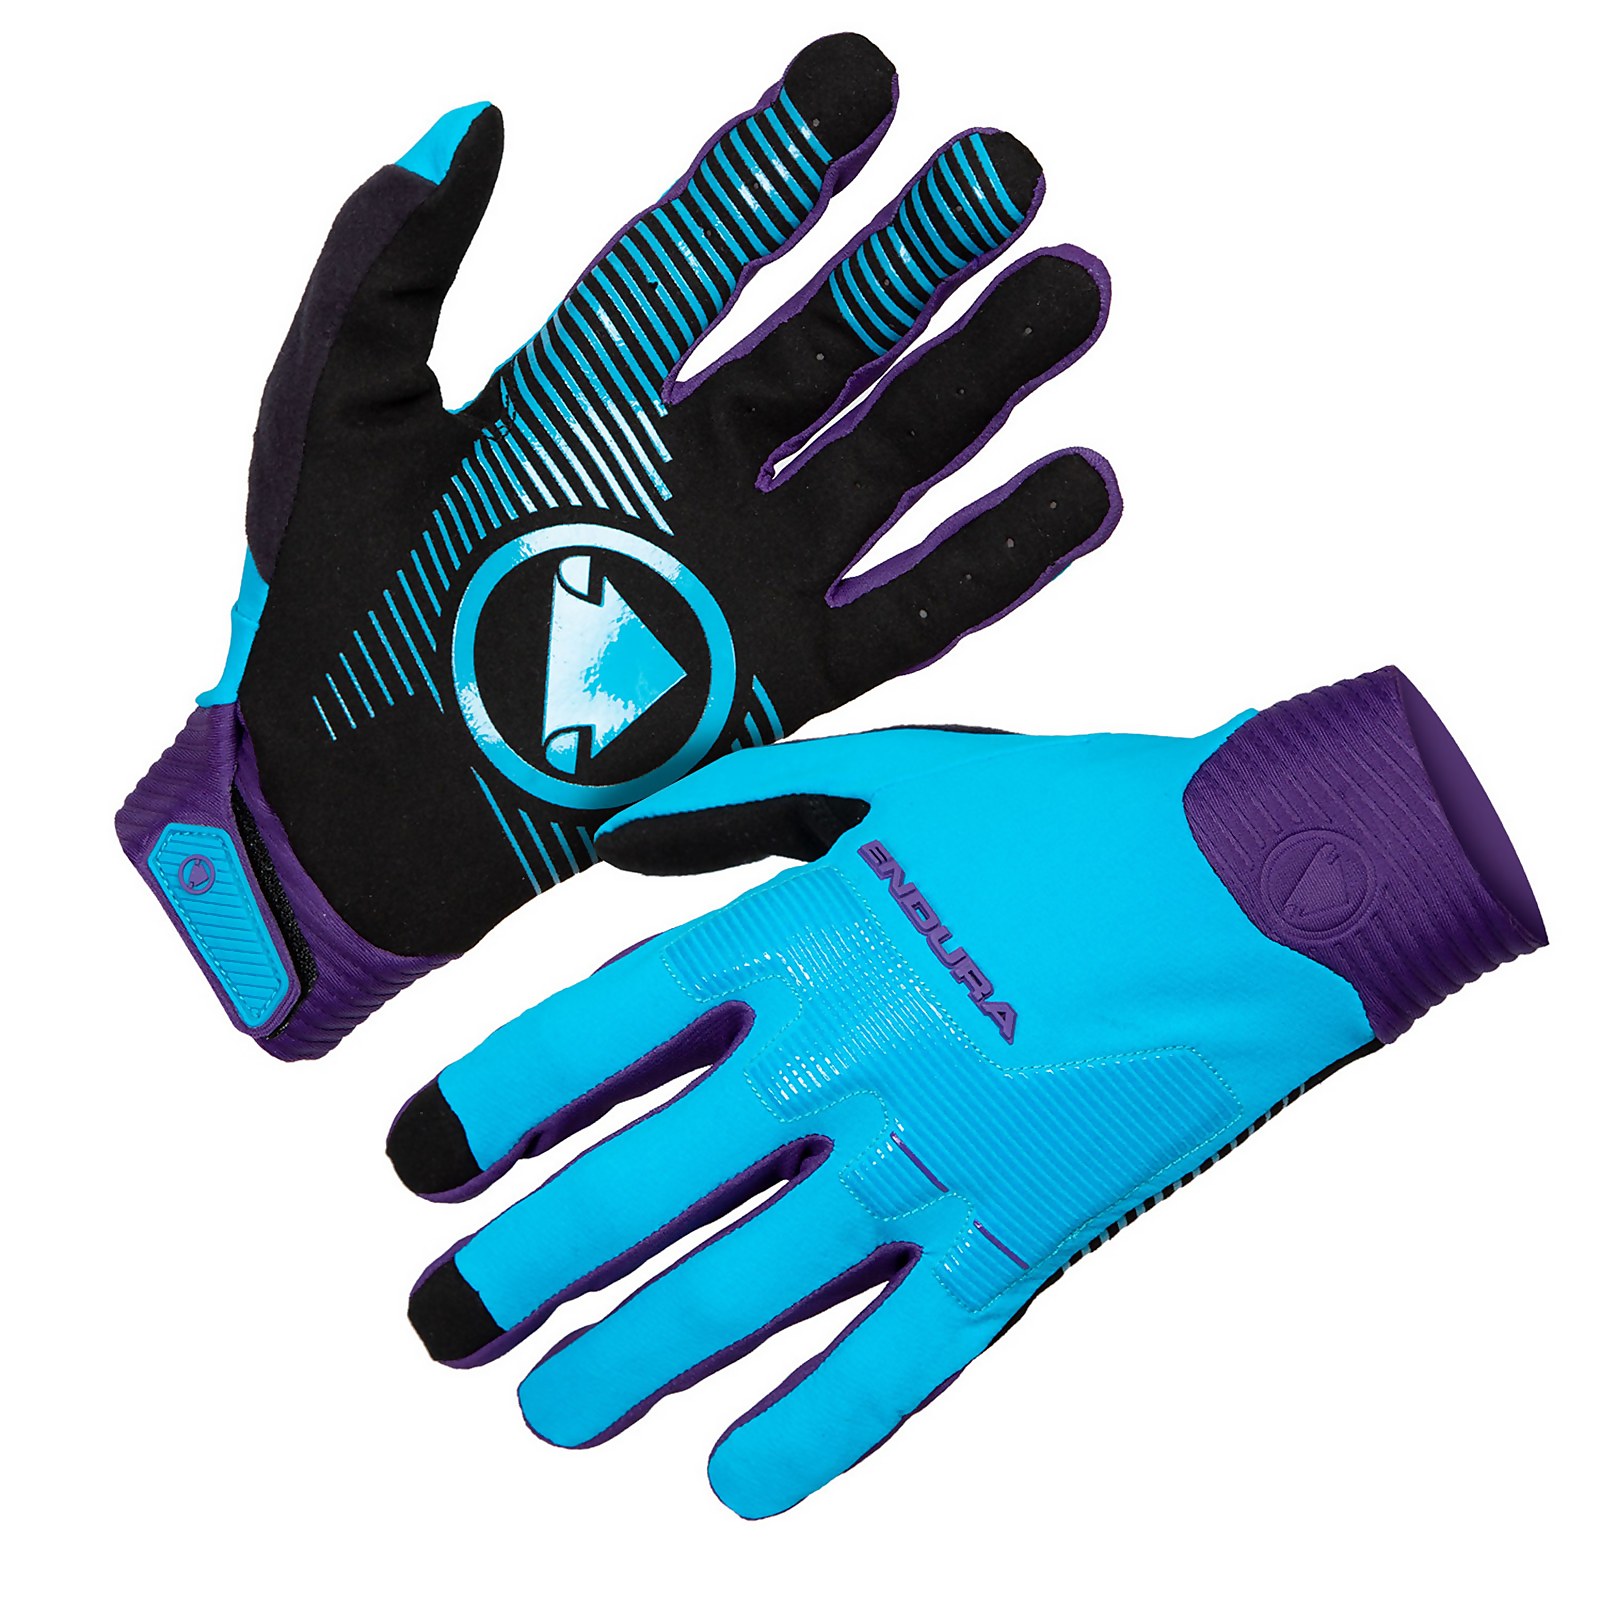 Mt500 D3o Glove - Electric Blue